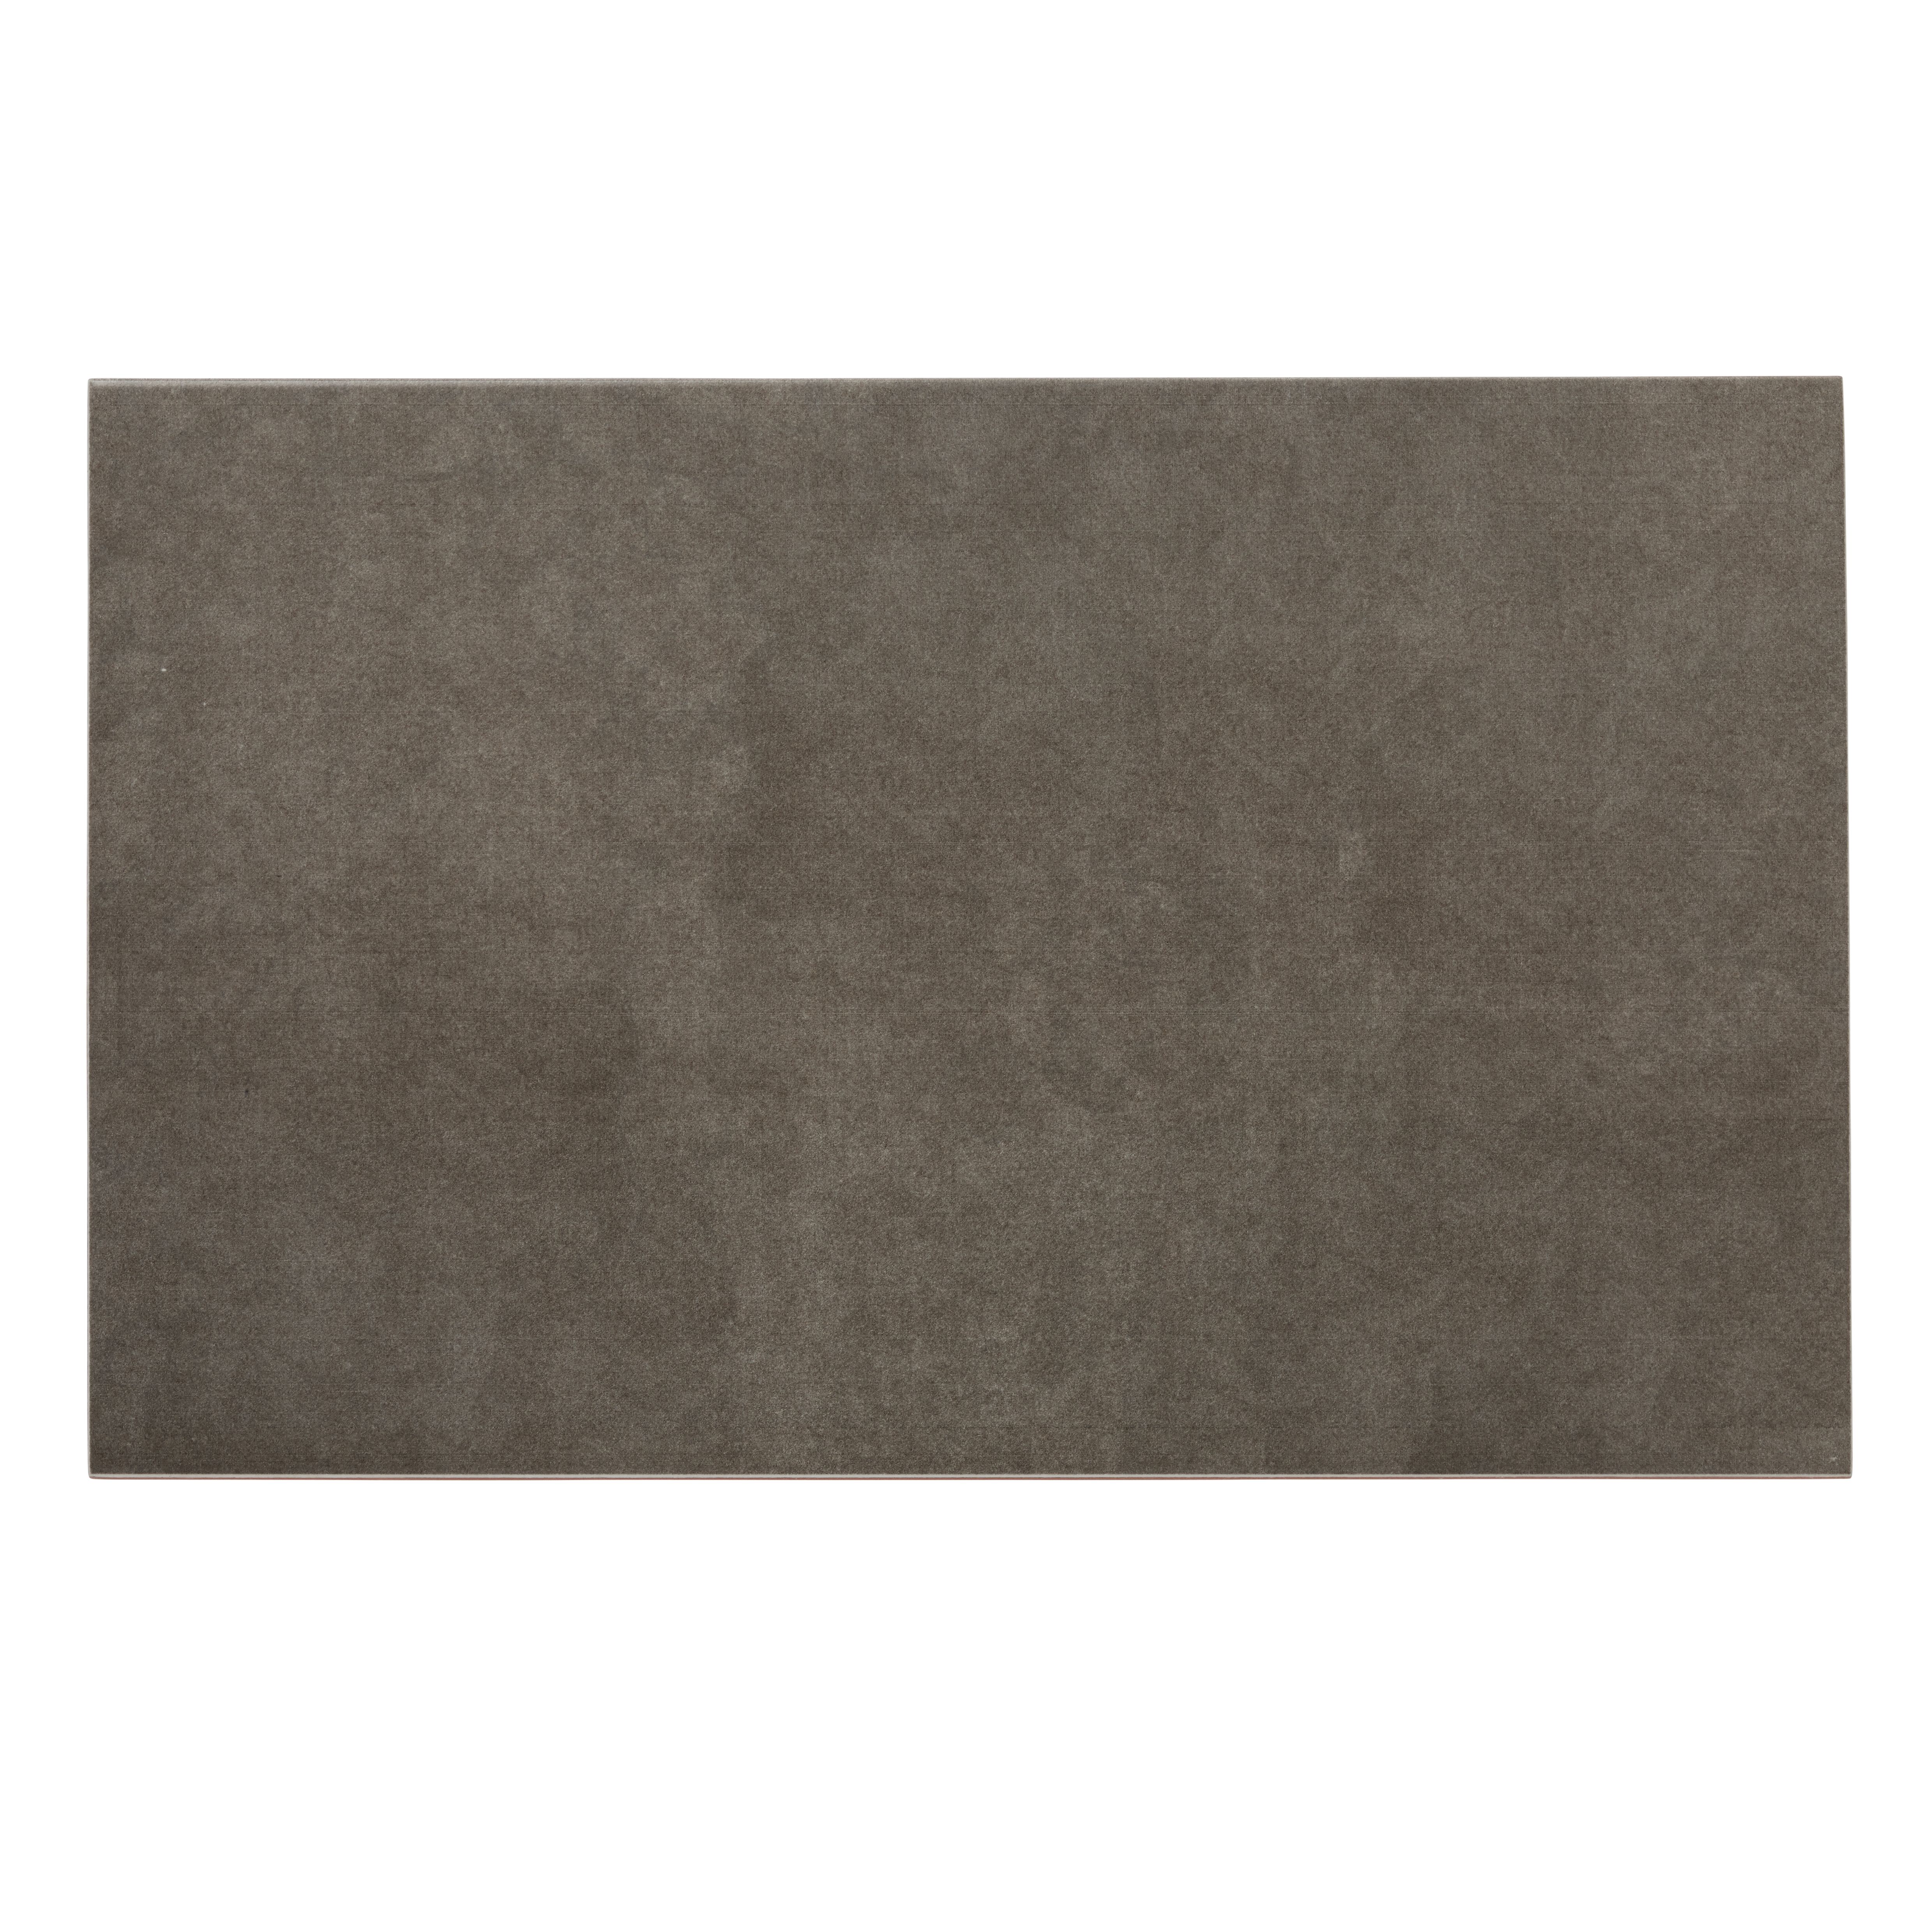 Cimenti Dove Matt Flat Ceramic Indoor Wall Tile, Pack of 10, (L)402.4mm (W)251.6mm